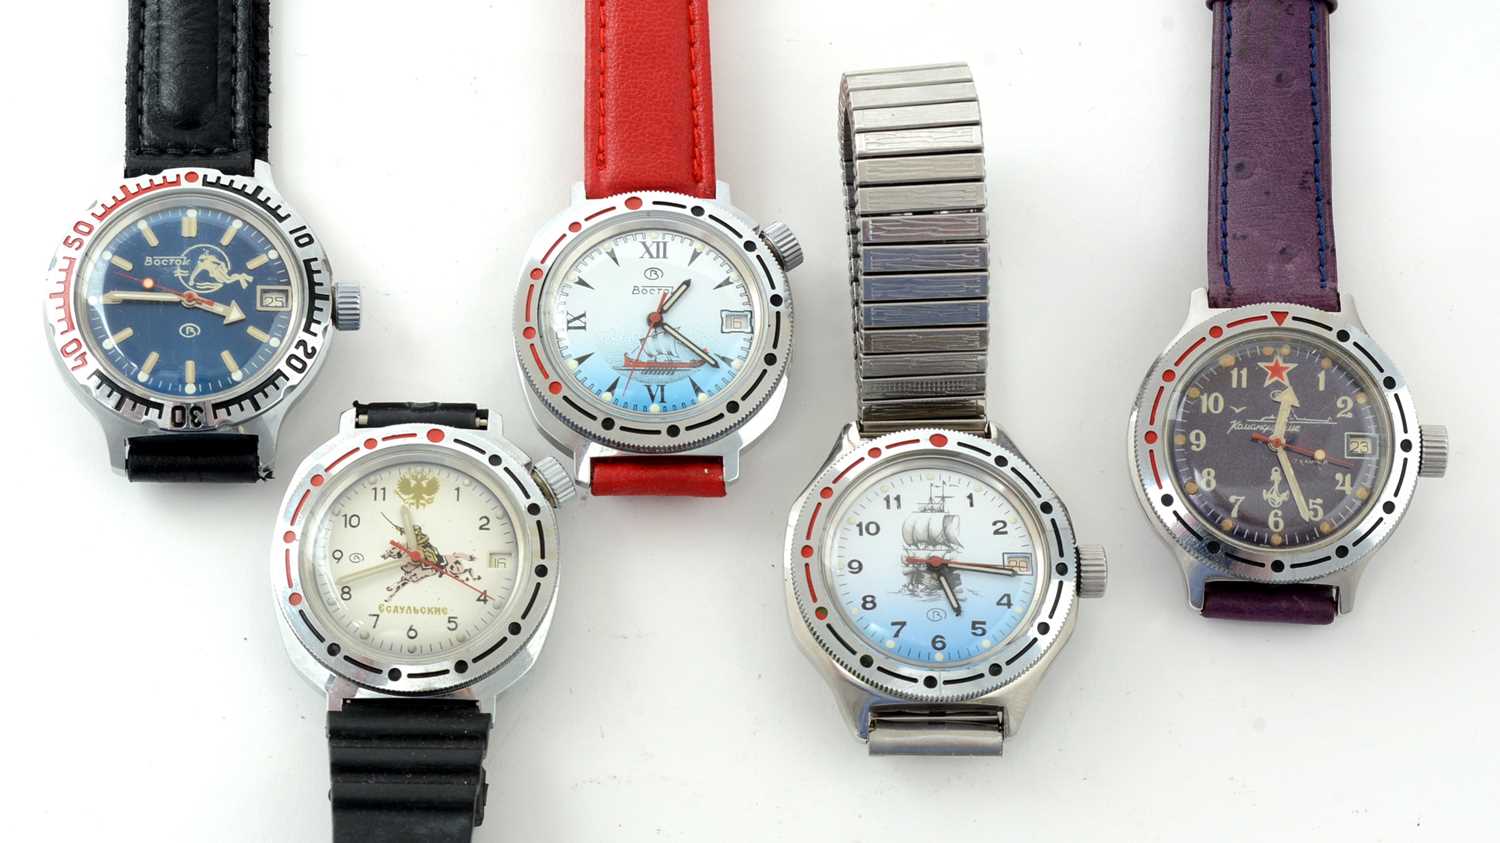 New men's mechanical watch Vostok Komandirskie Red 219326 - Inspire Uplift